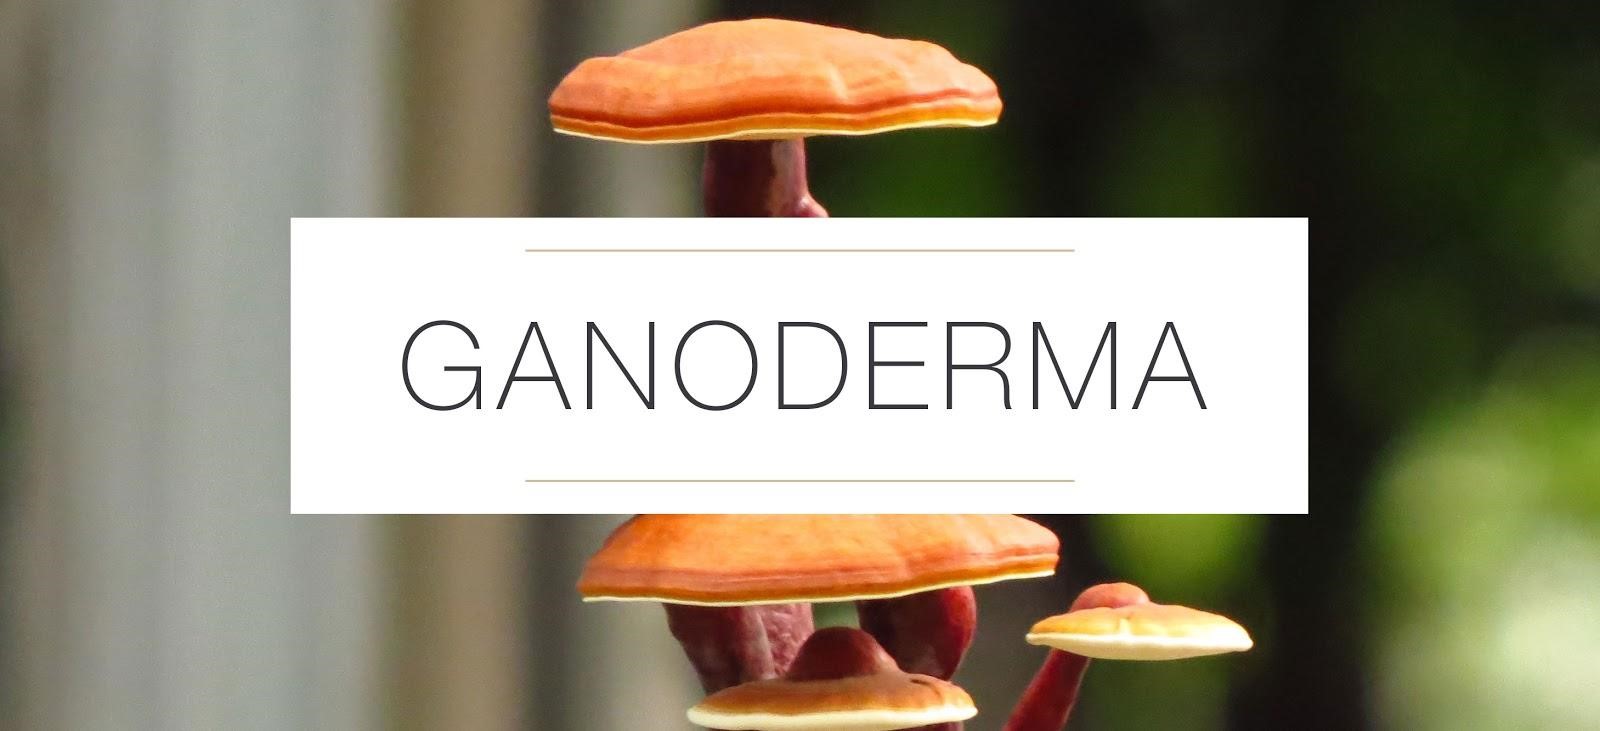 تاثیر قارچ گانودرما بر روی پوست